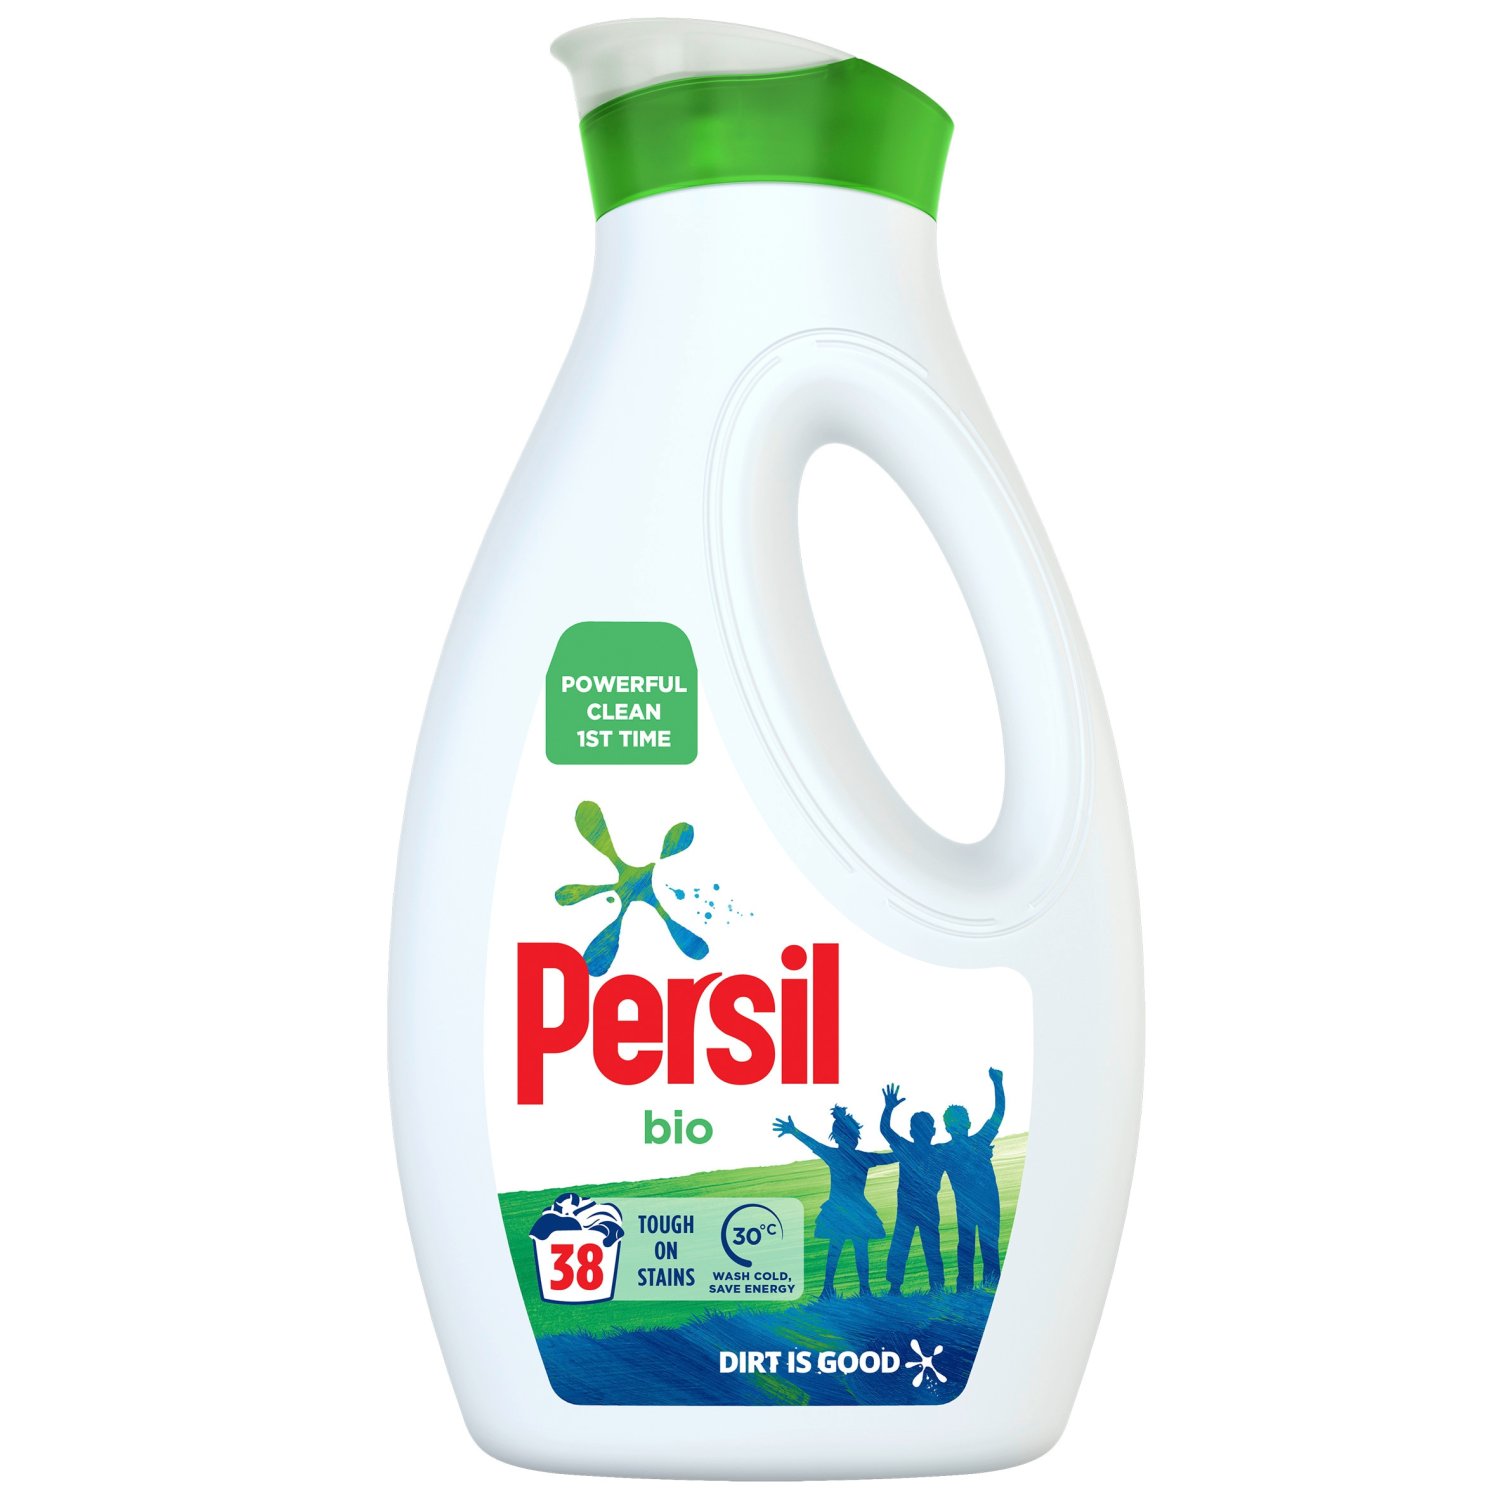 Persil Bio Liquid Washing Detergent 38 Washes (1.03 L)